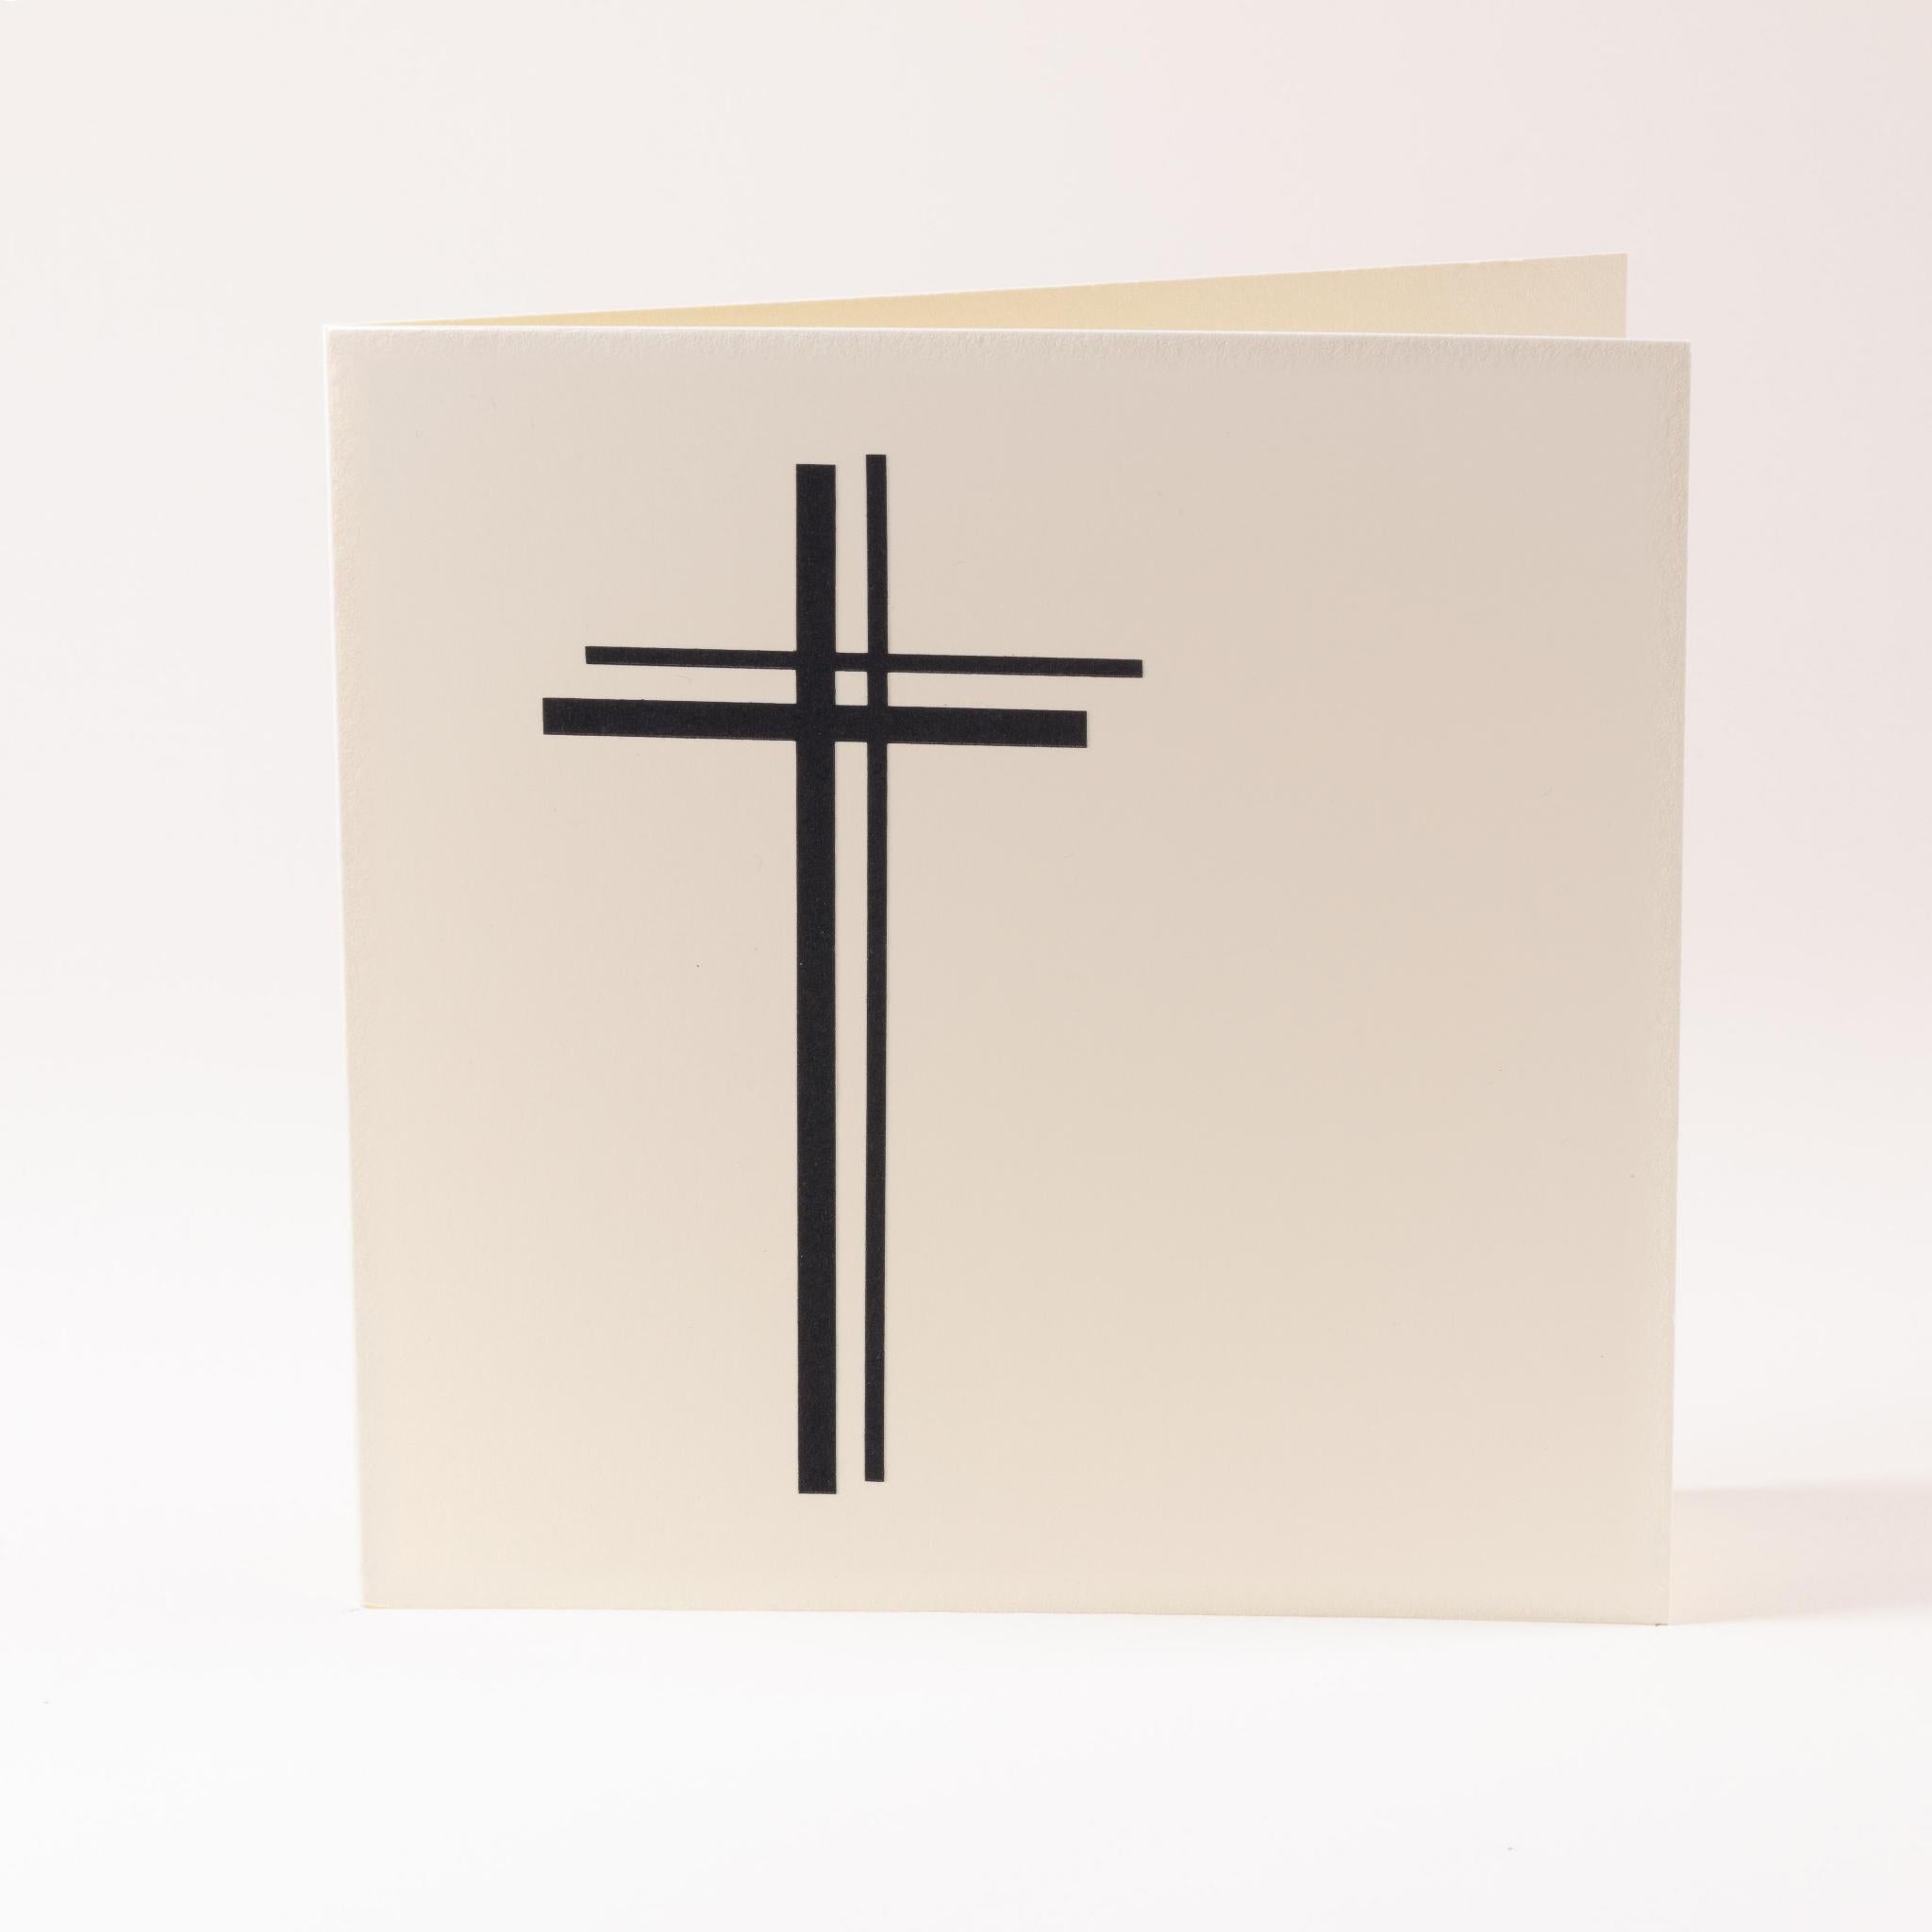 Kondolenzkarte "Kreuz"